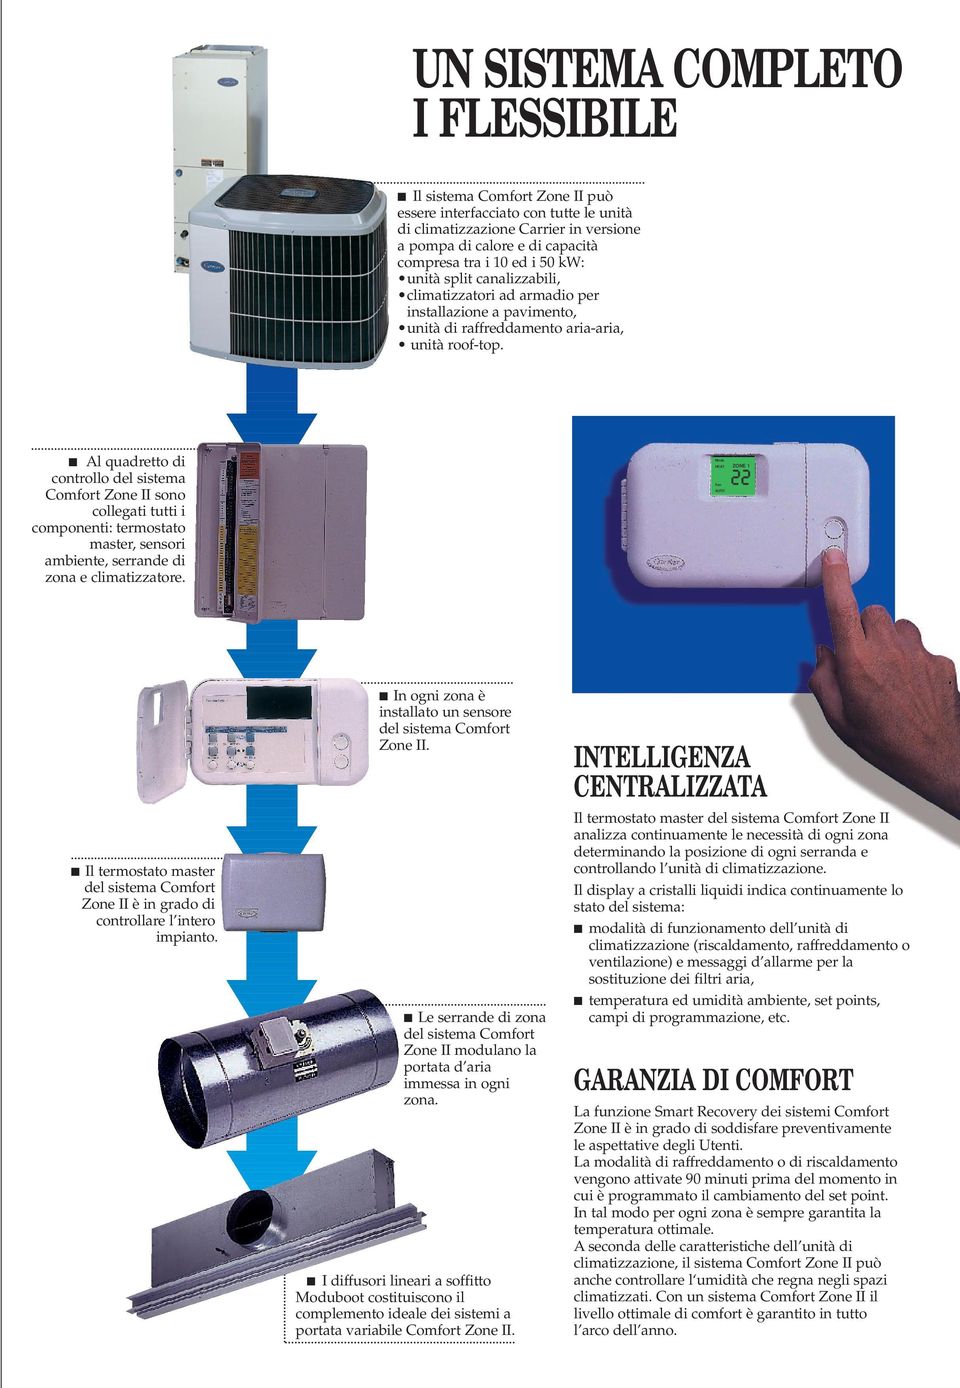 Al quadretto di controllo del sistema Comfort Zone II sono collegati tutti i componenti: termostato master, sensori ambiente, serrande di zona e climatizzatore.